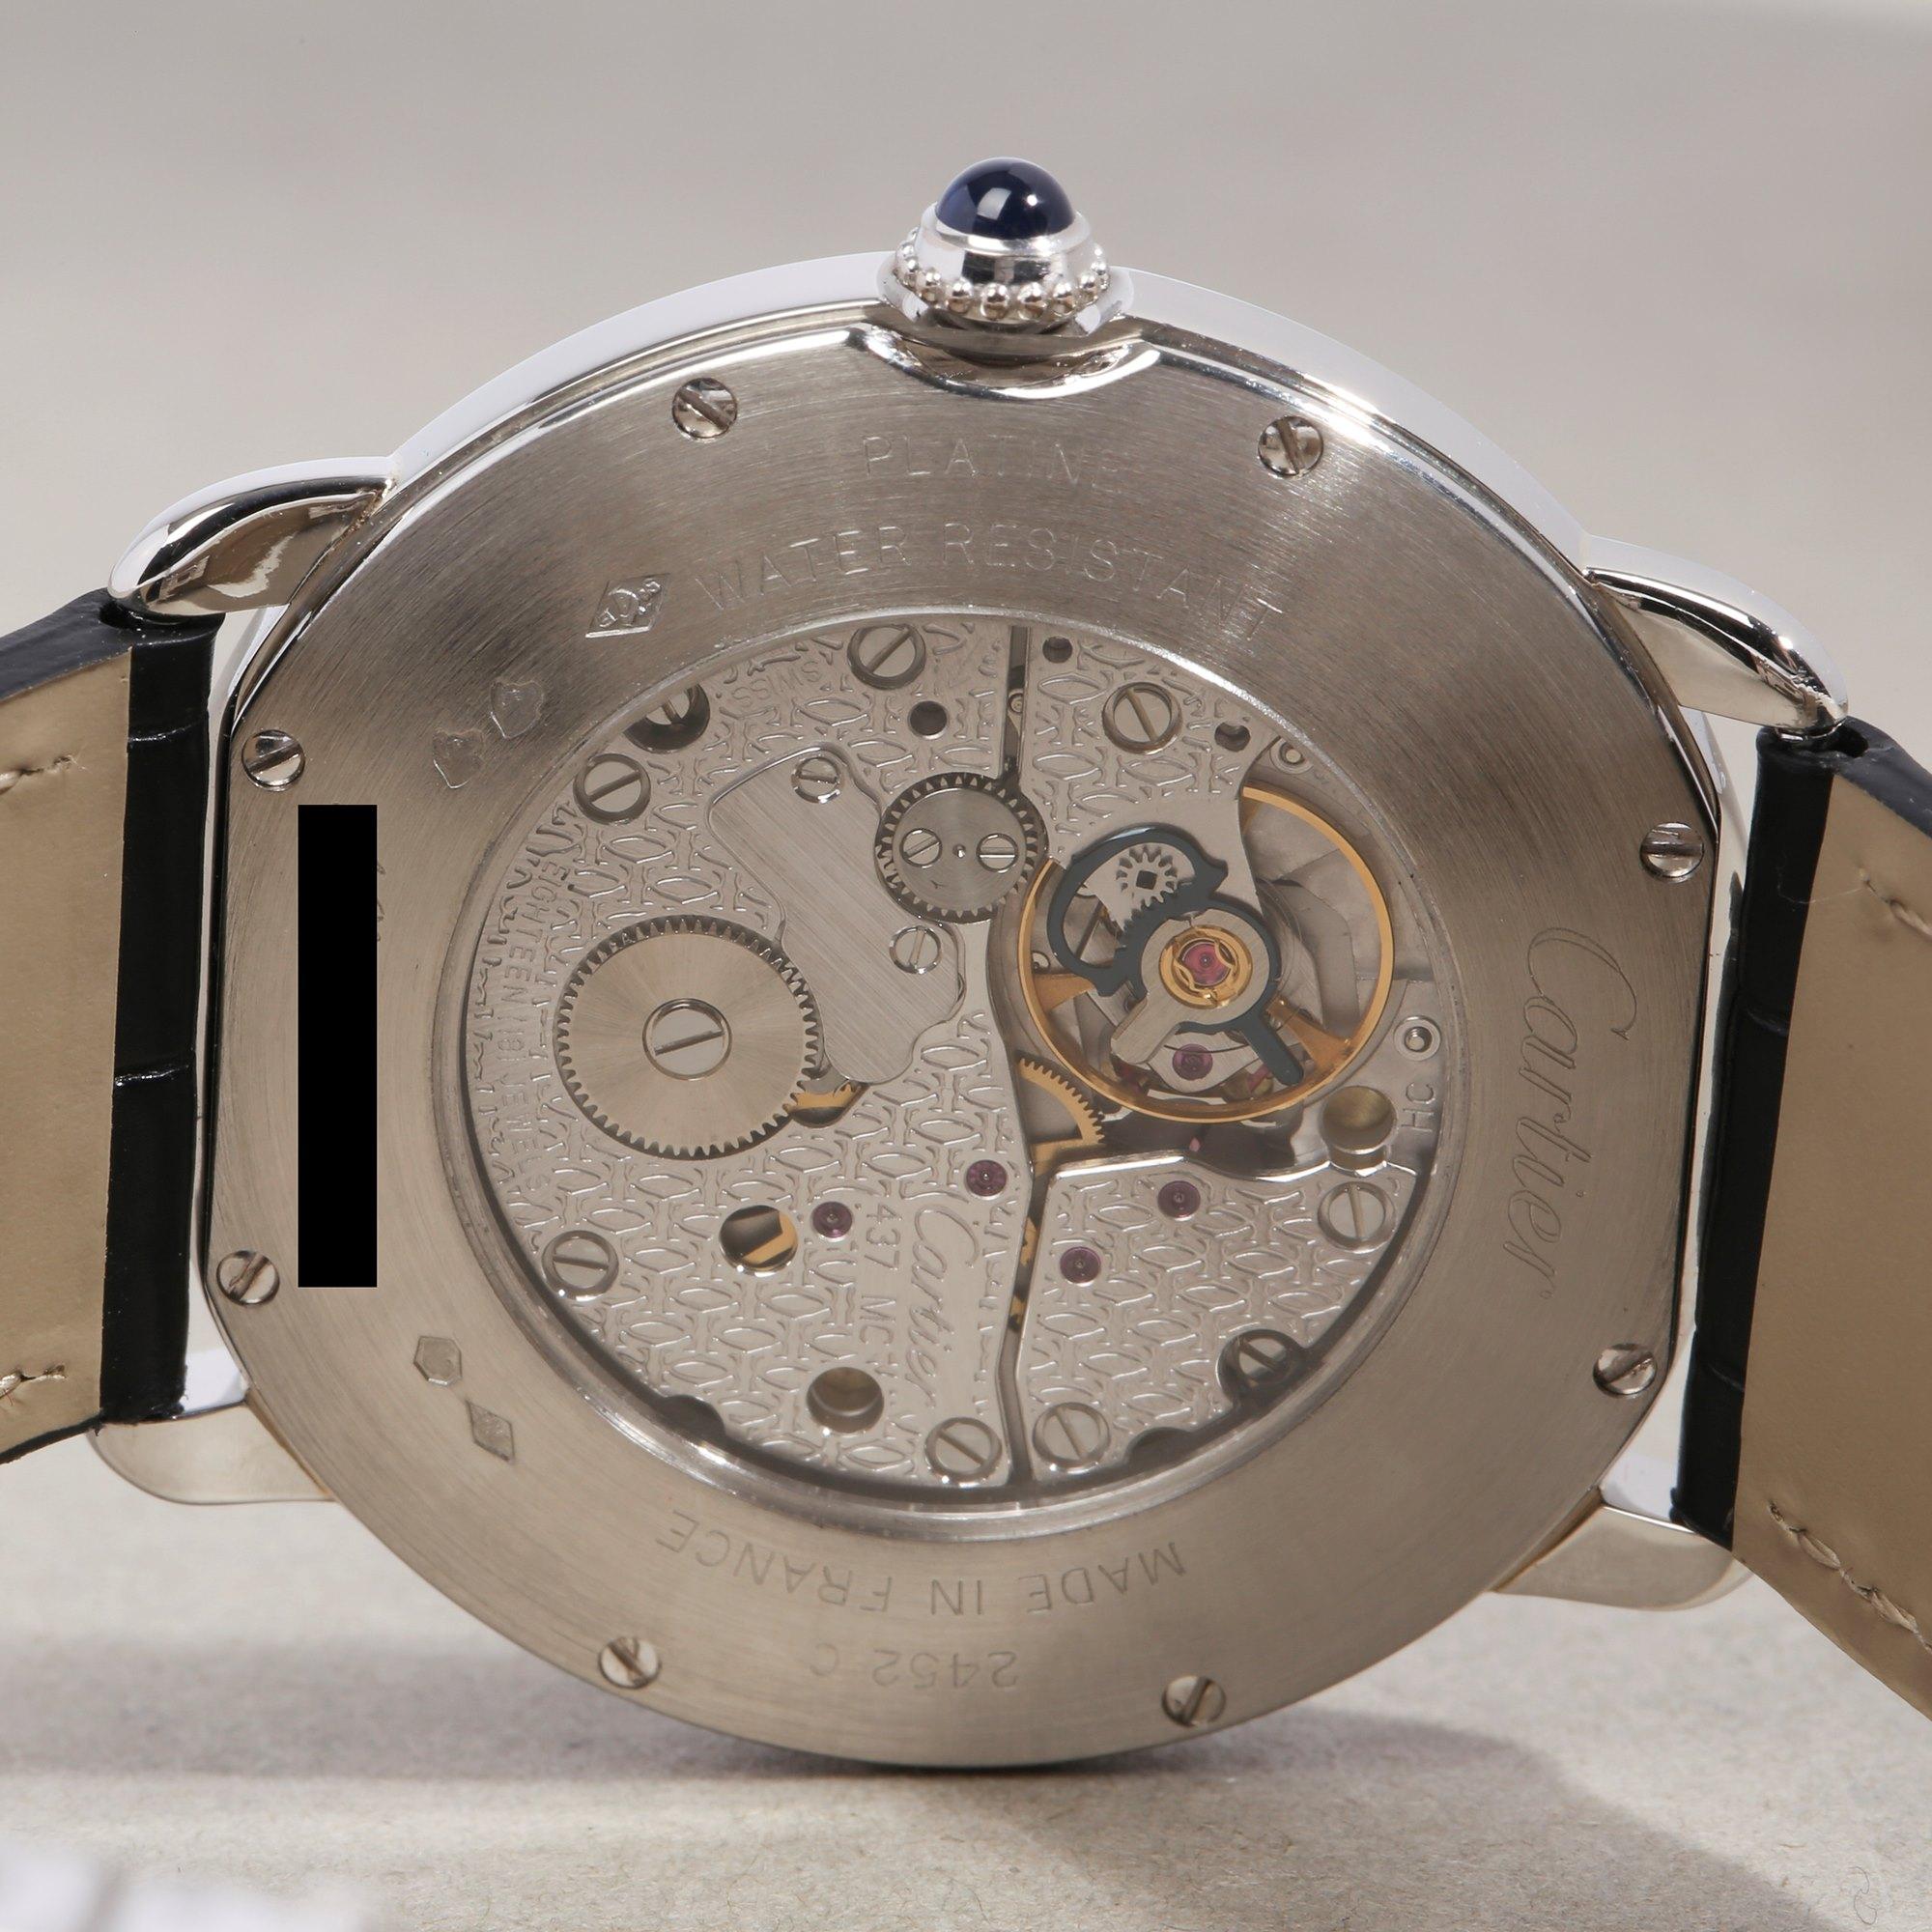 Cartier Ronde 2452 Unisex Platinum Watch 2